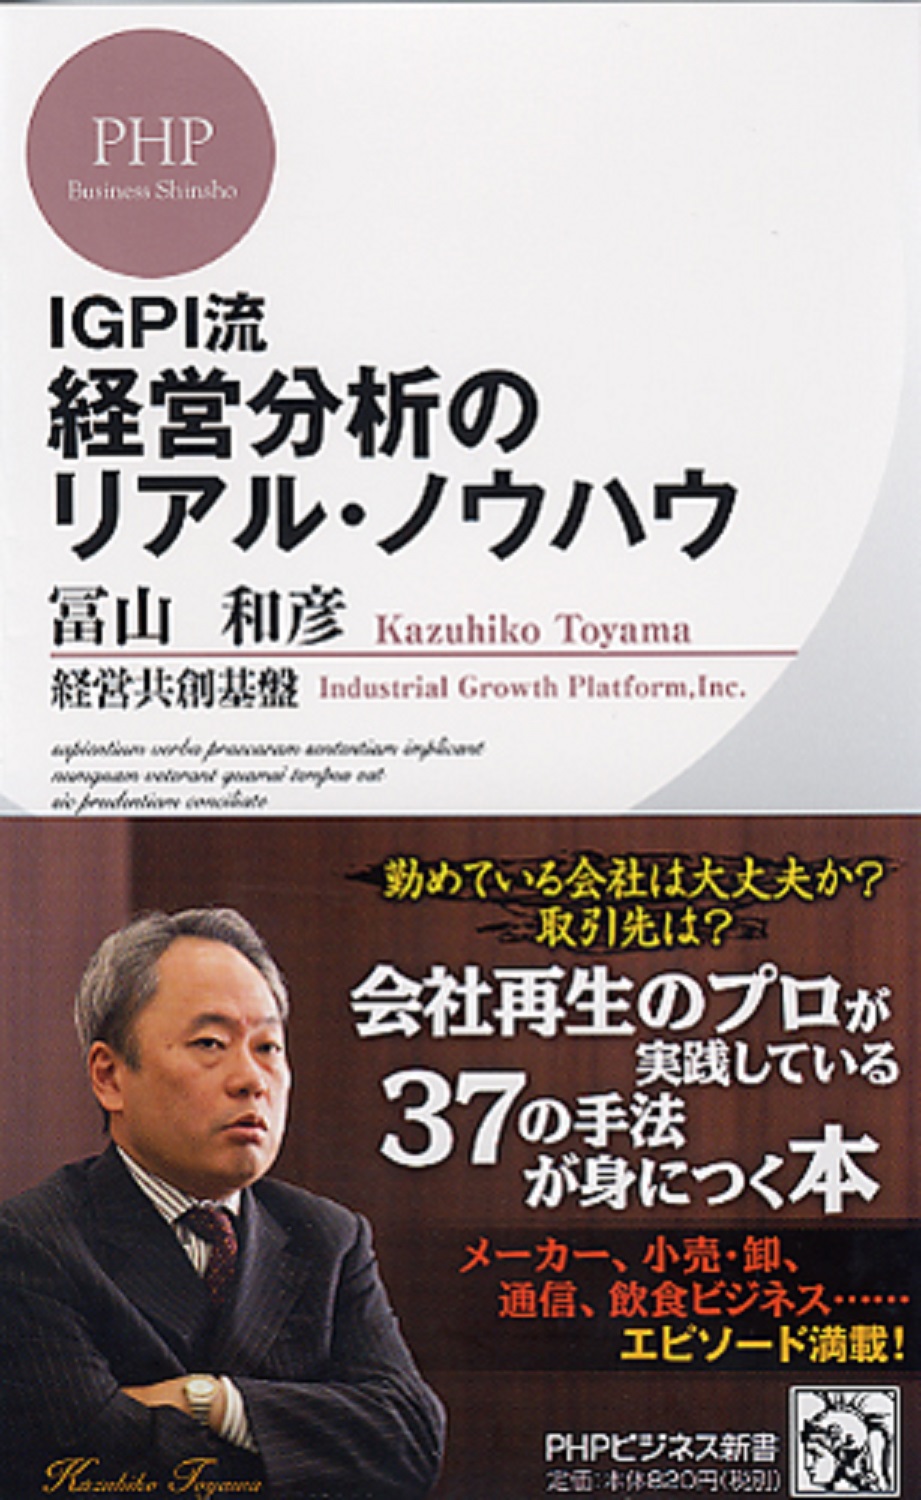 IGPI流 経営分析のリアル・ノウハウの商品画像